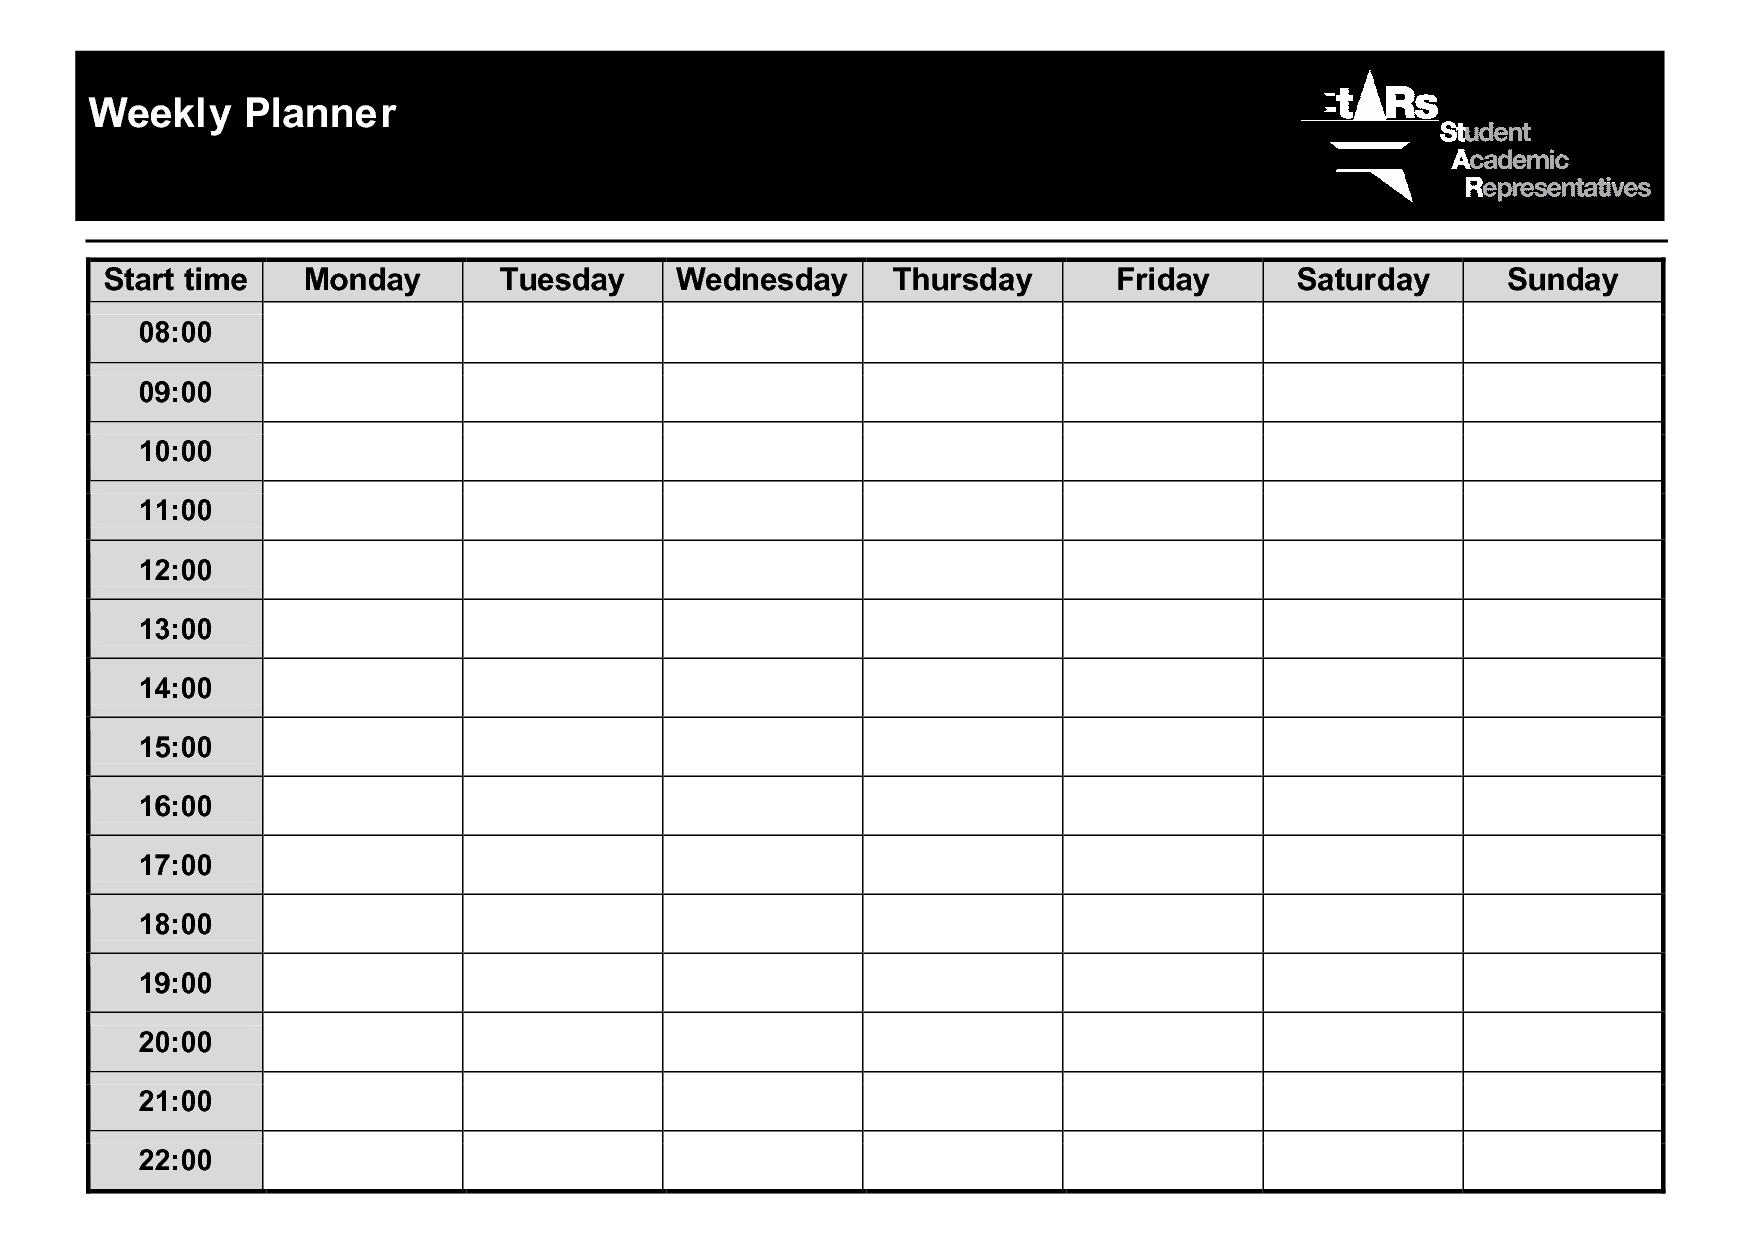 Недельный планер со временем. Planner шаблоны для печати. Расписание на неделю шаблон. Графики для планера. Schedule planning